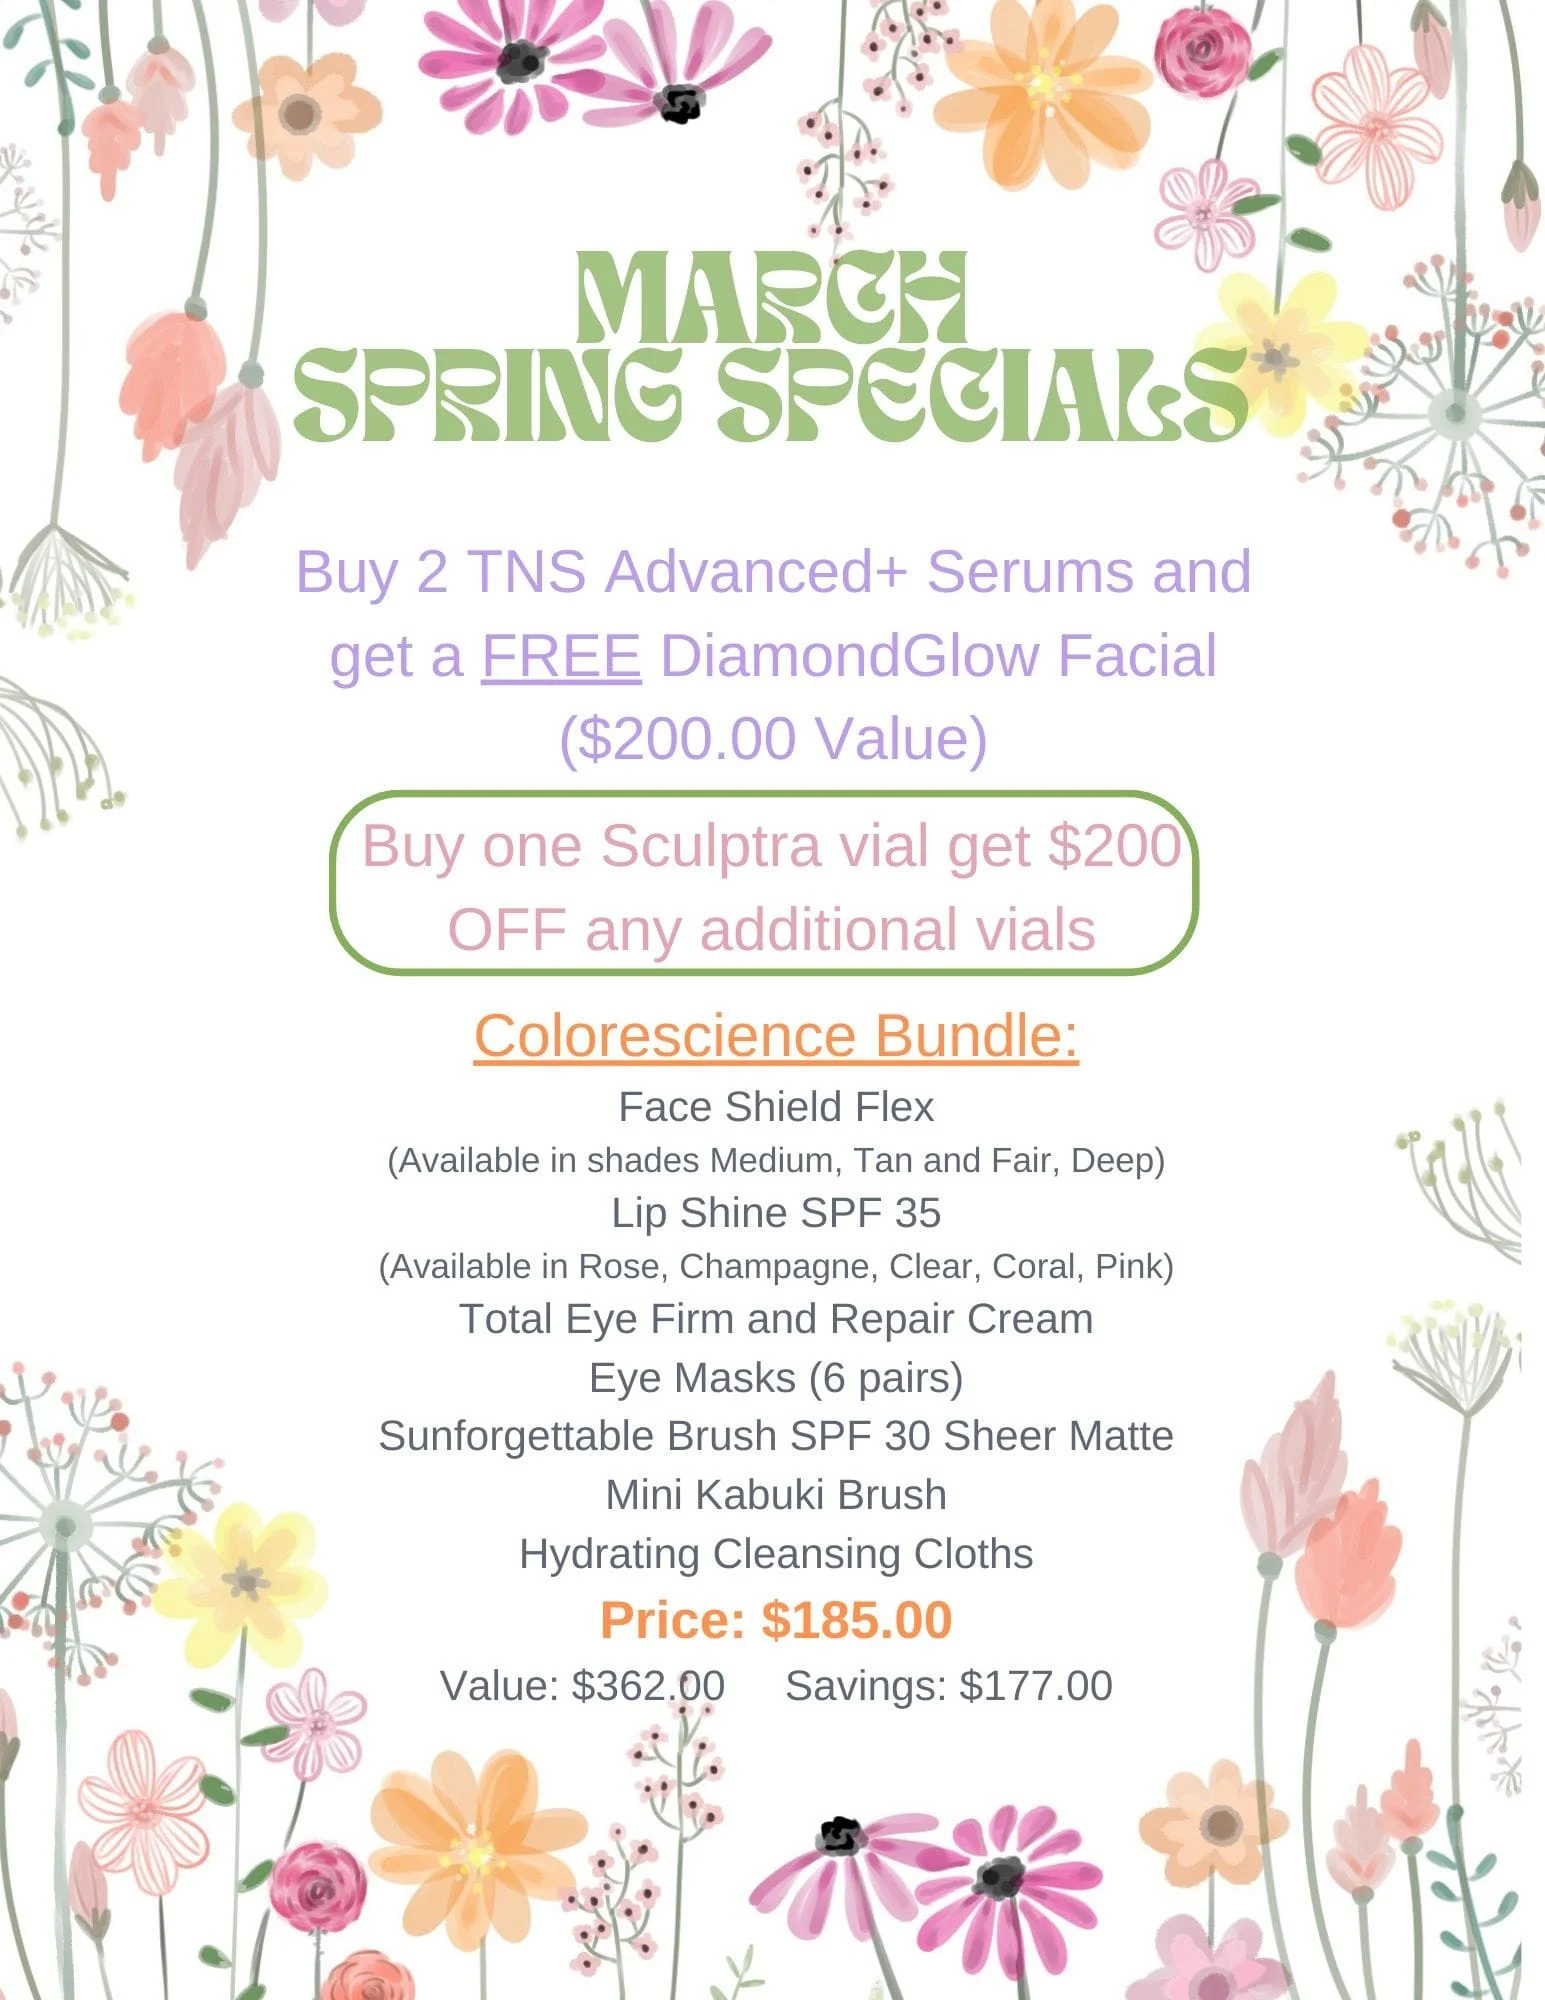 March Spring Specials